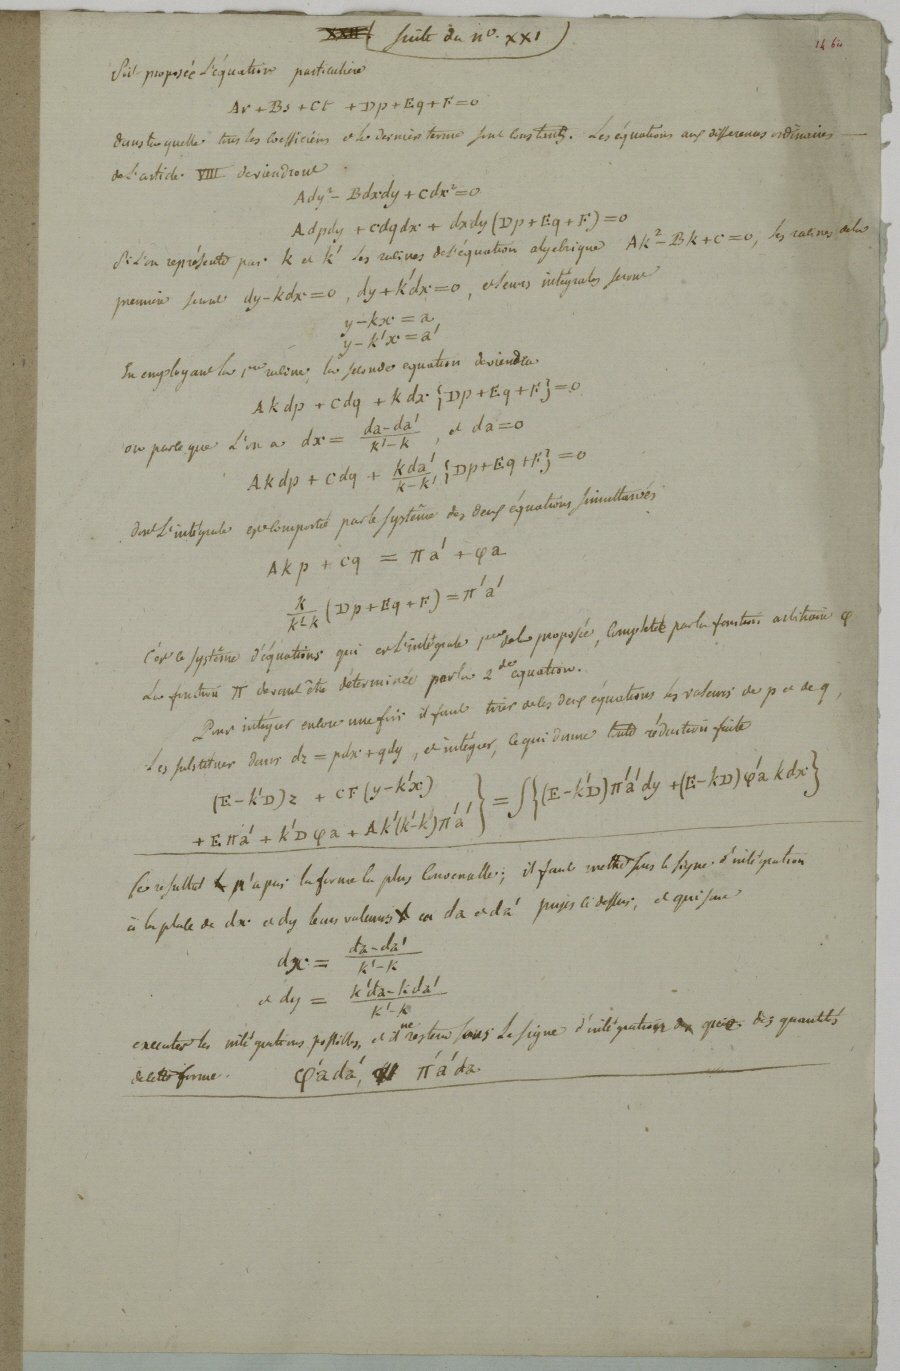 Mémoire sur le calcul intégral des équations aux différences partielles linéaires, de tous les ordres et à deux variables principales